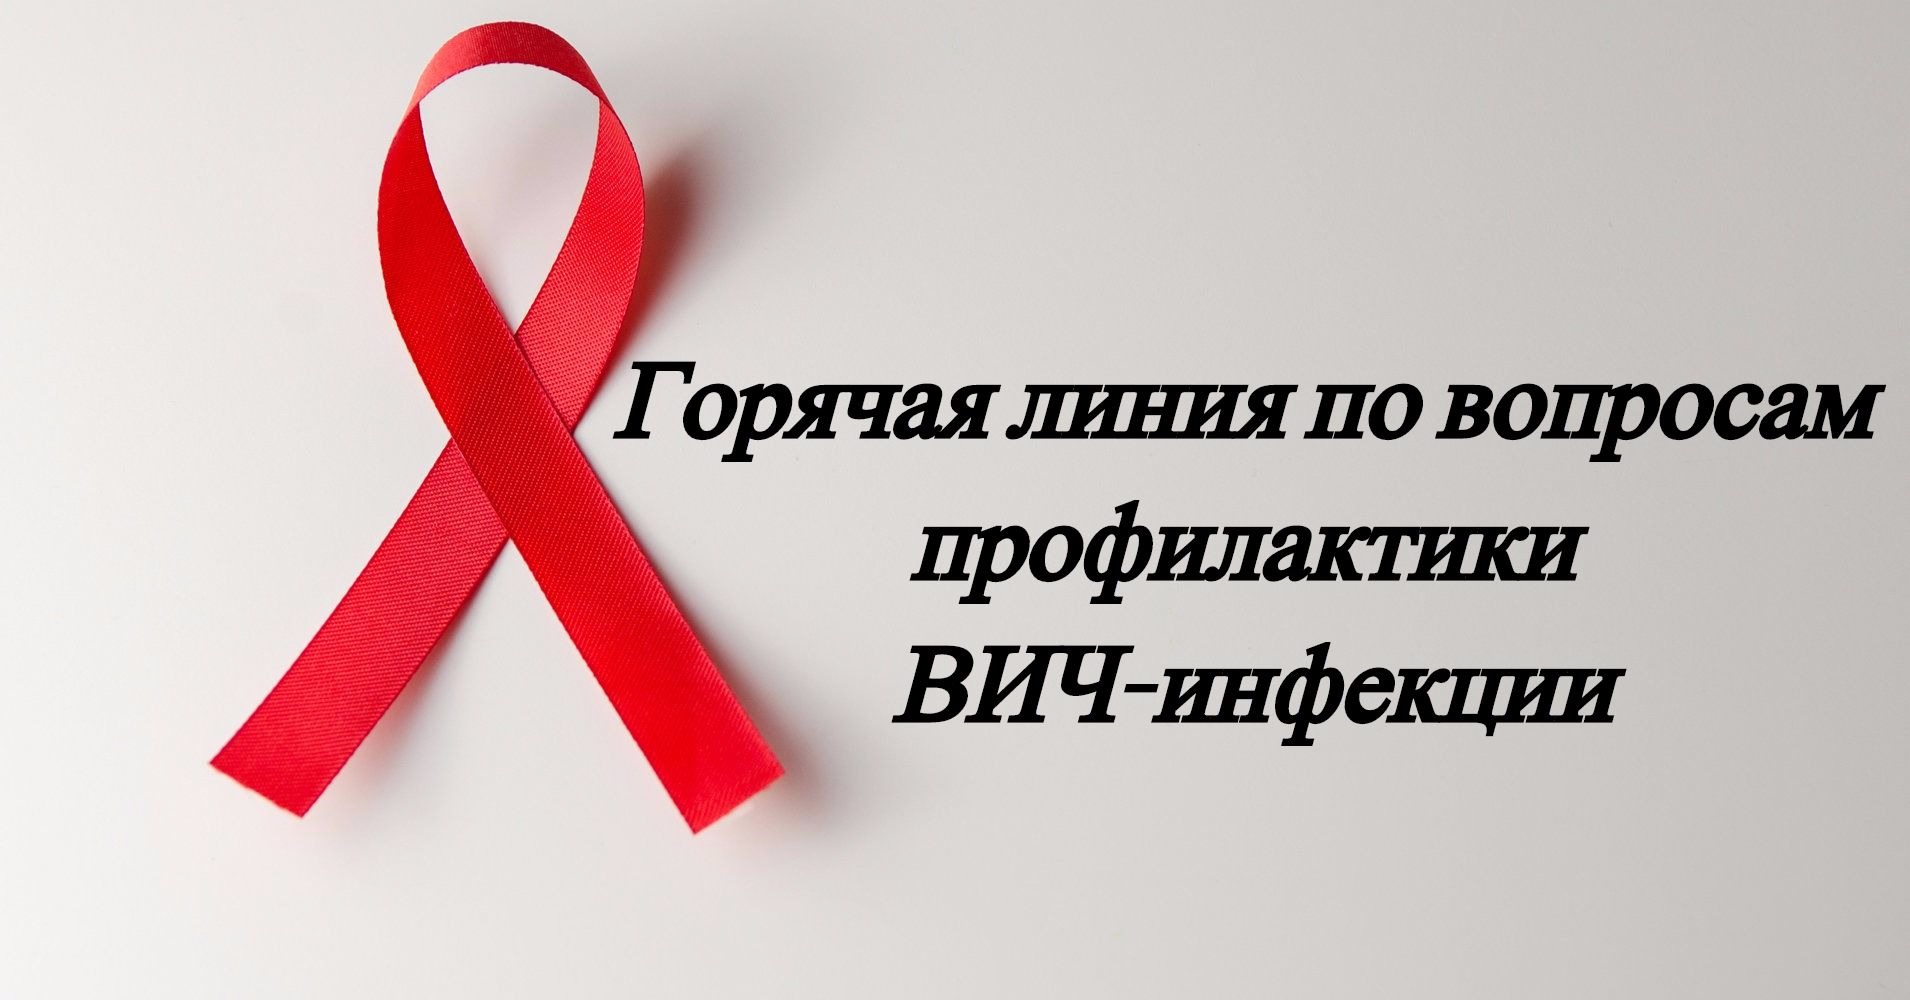 О проведении «горячей линии» по профилактике ВИЧ-инфекции